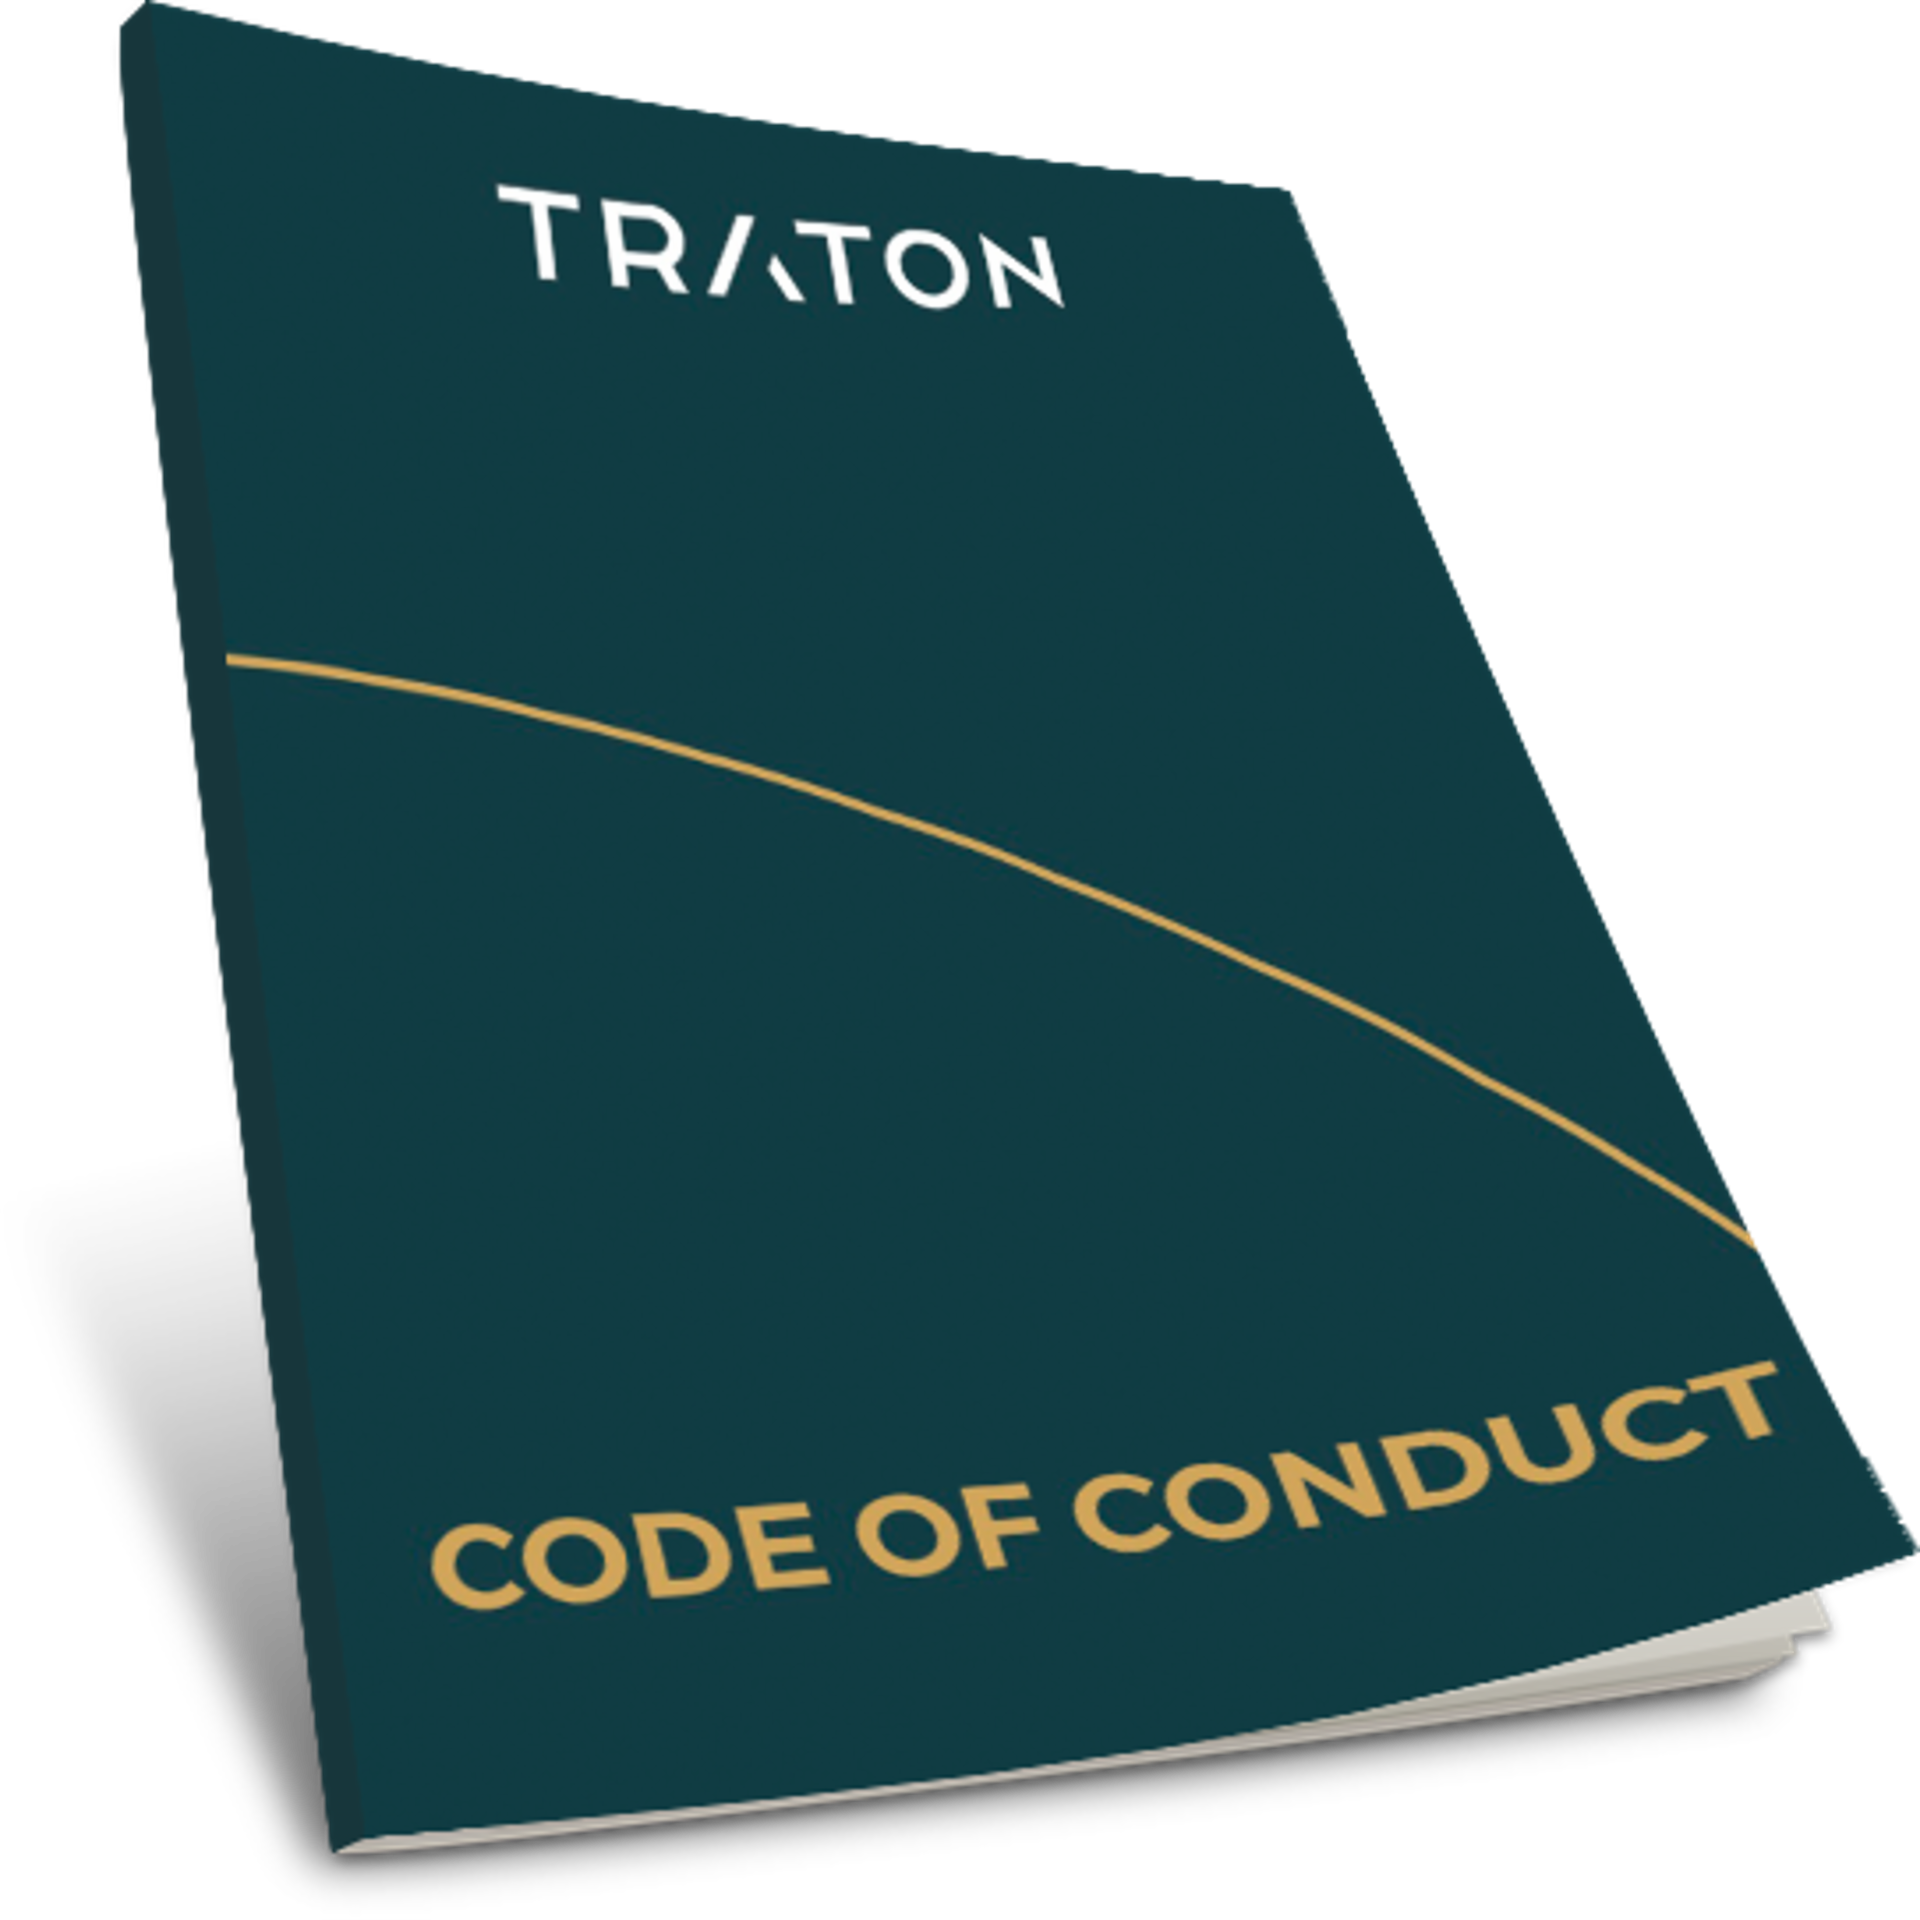 Deckblatt TRATON Code of Conduct  in dunklem Türkis mit gelber Linie, die diagonal über das Deckblatt läuft